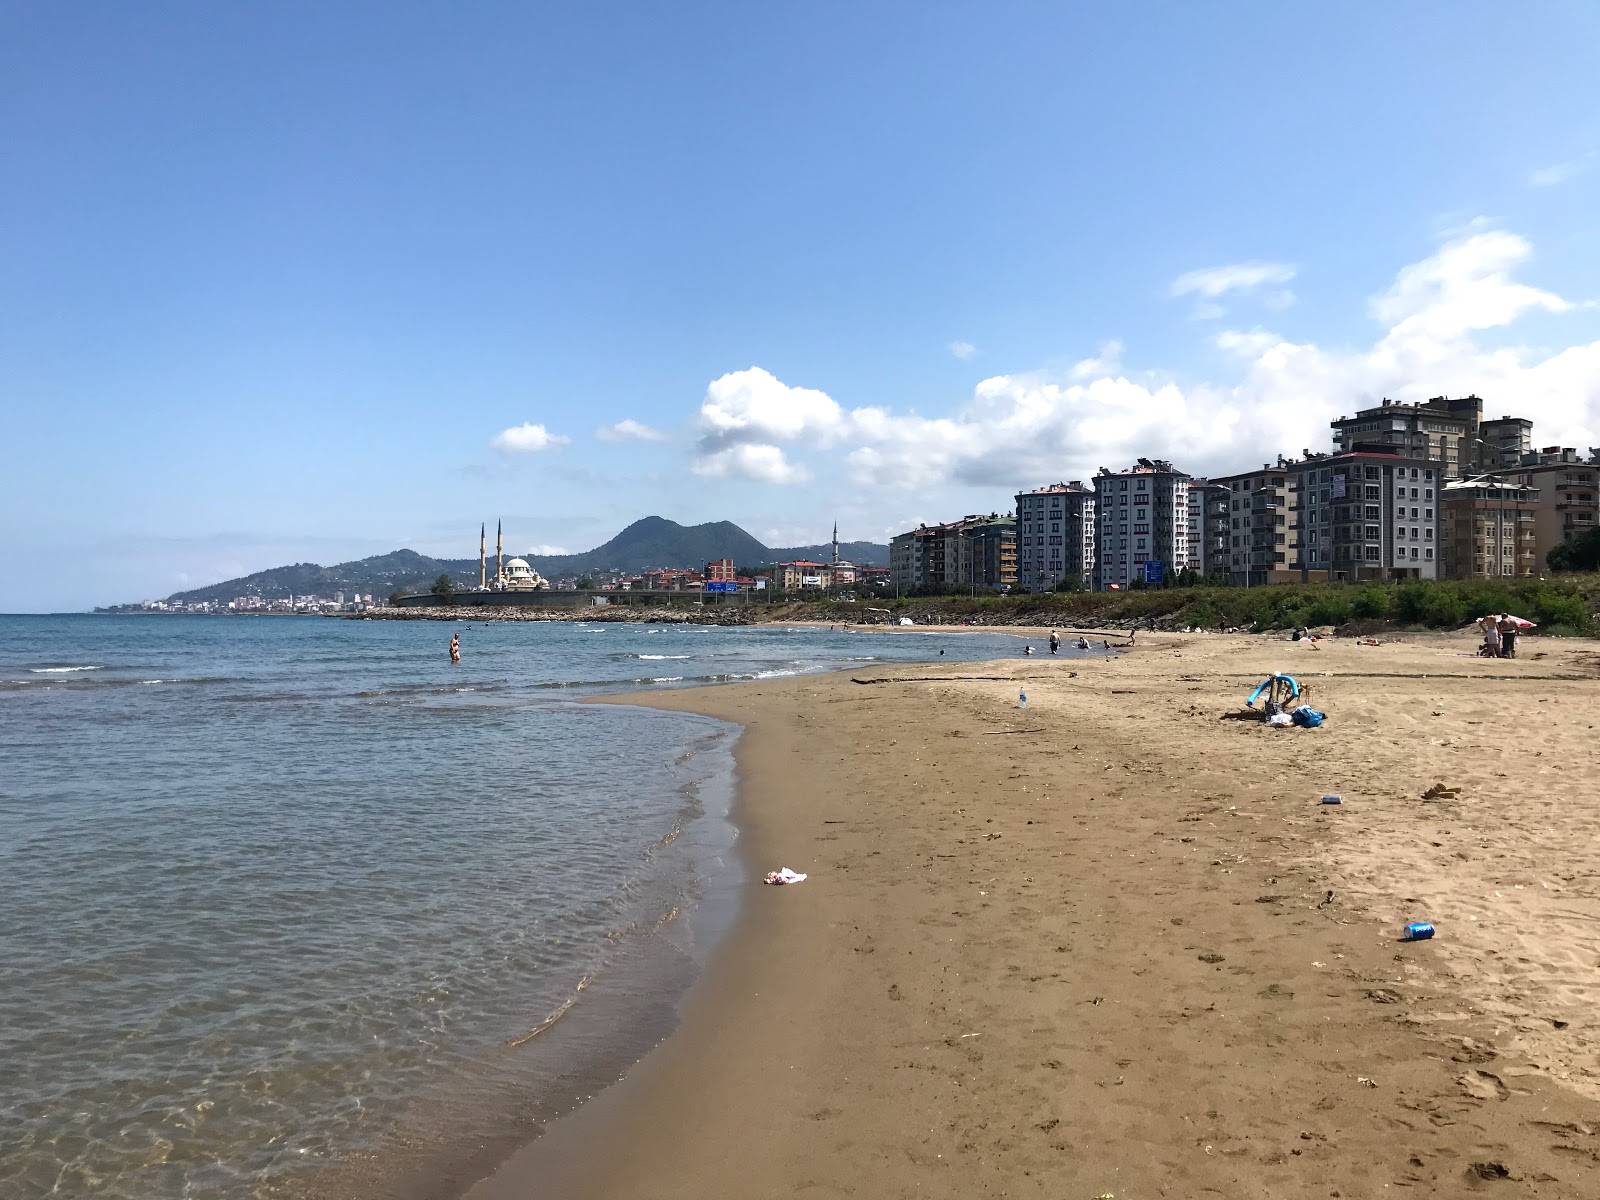 Municipal Beach'in fotoğrafı parlak kum yüzey ile